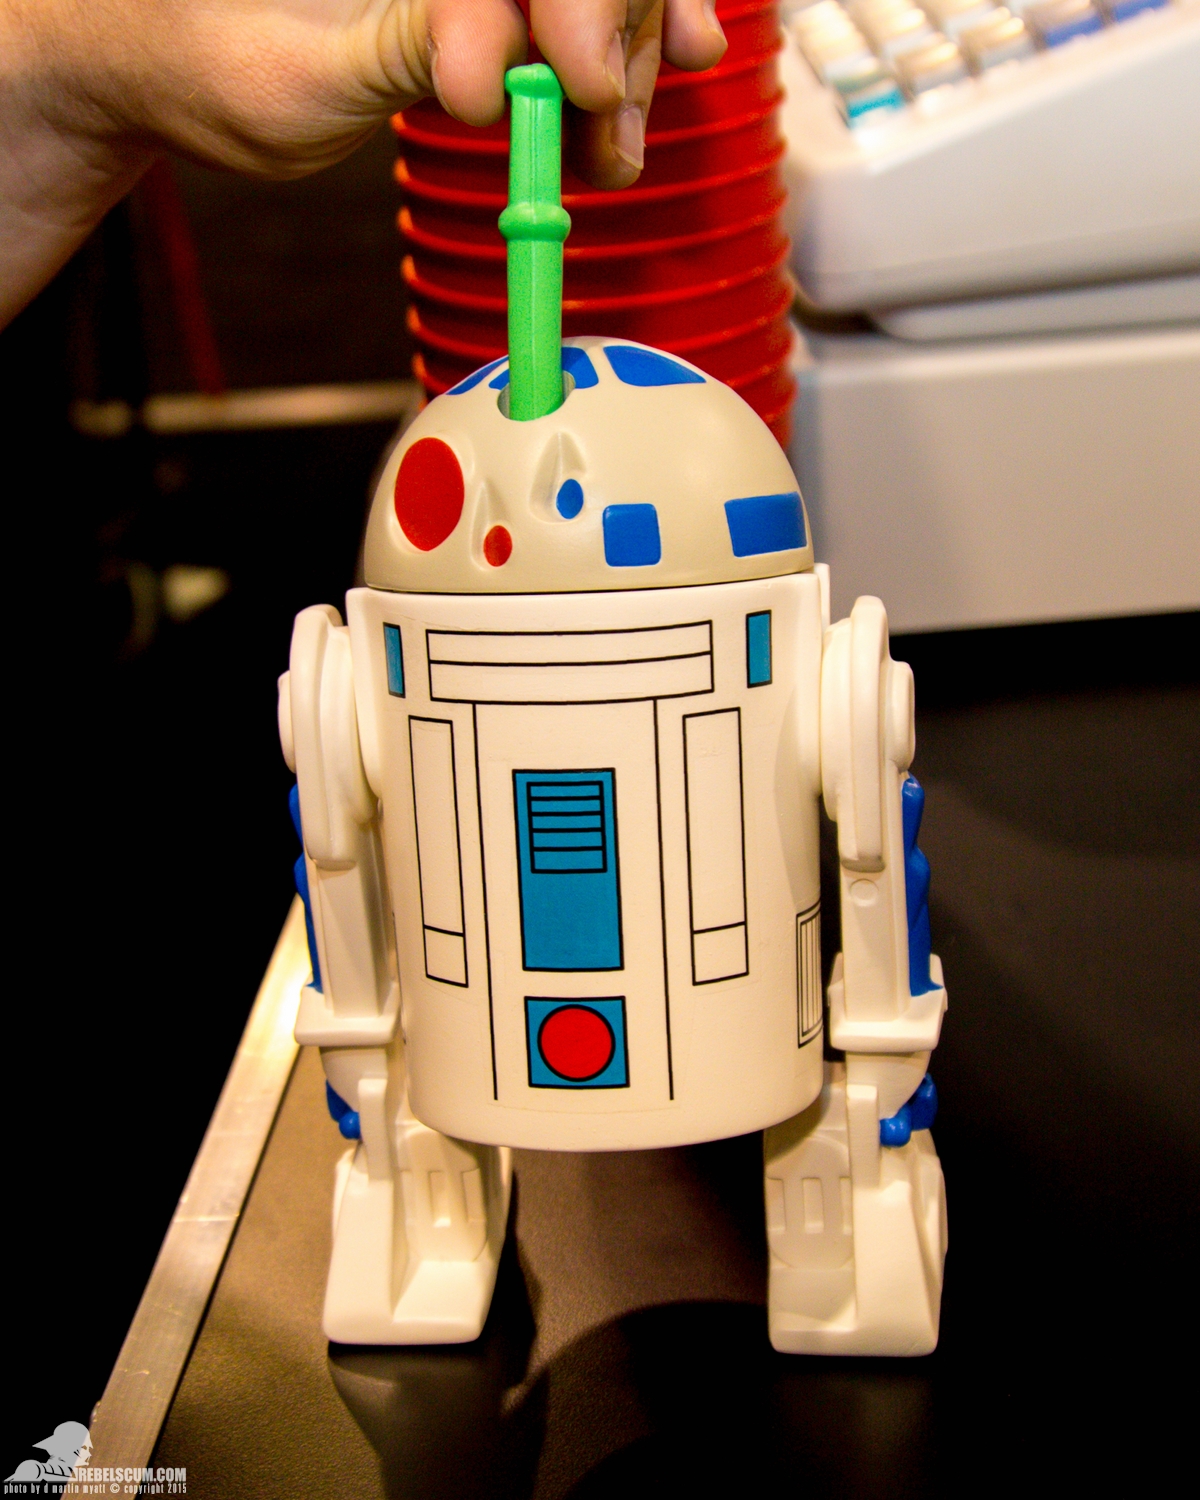 Star-Wars-Celebration-Anaheim-2015-Gentle-Giant-Droids-R2-D2-002.jpg